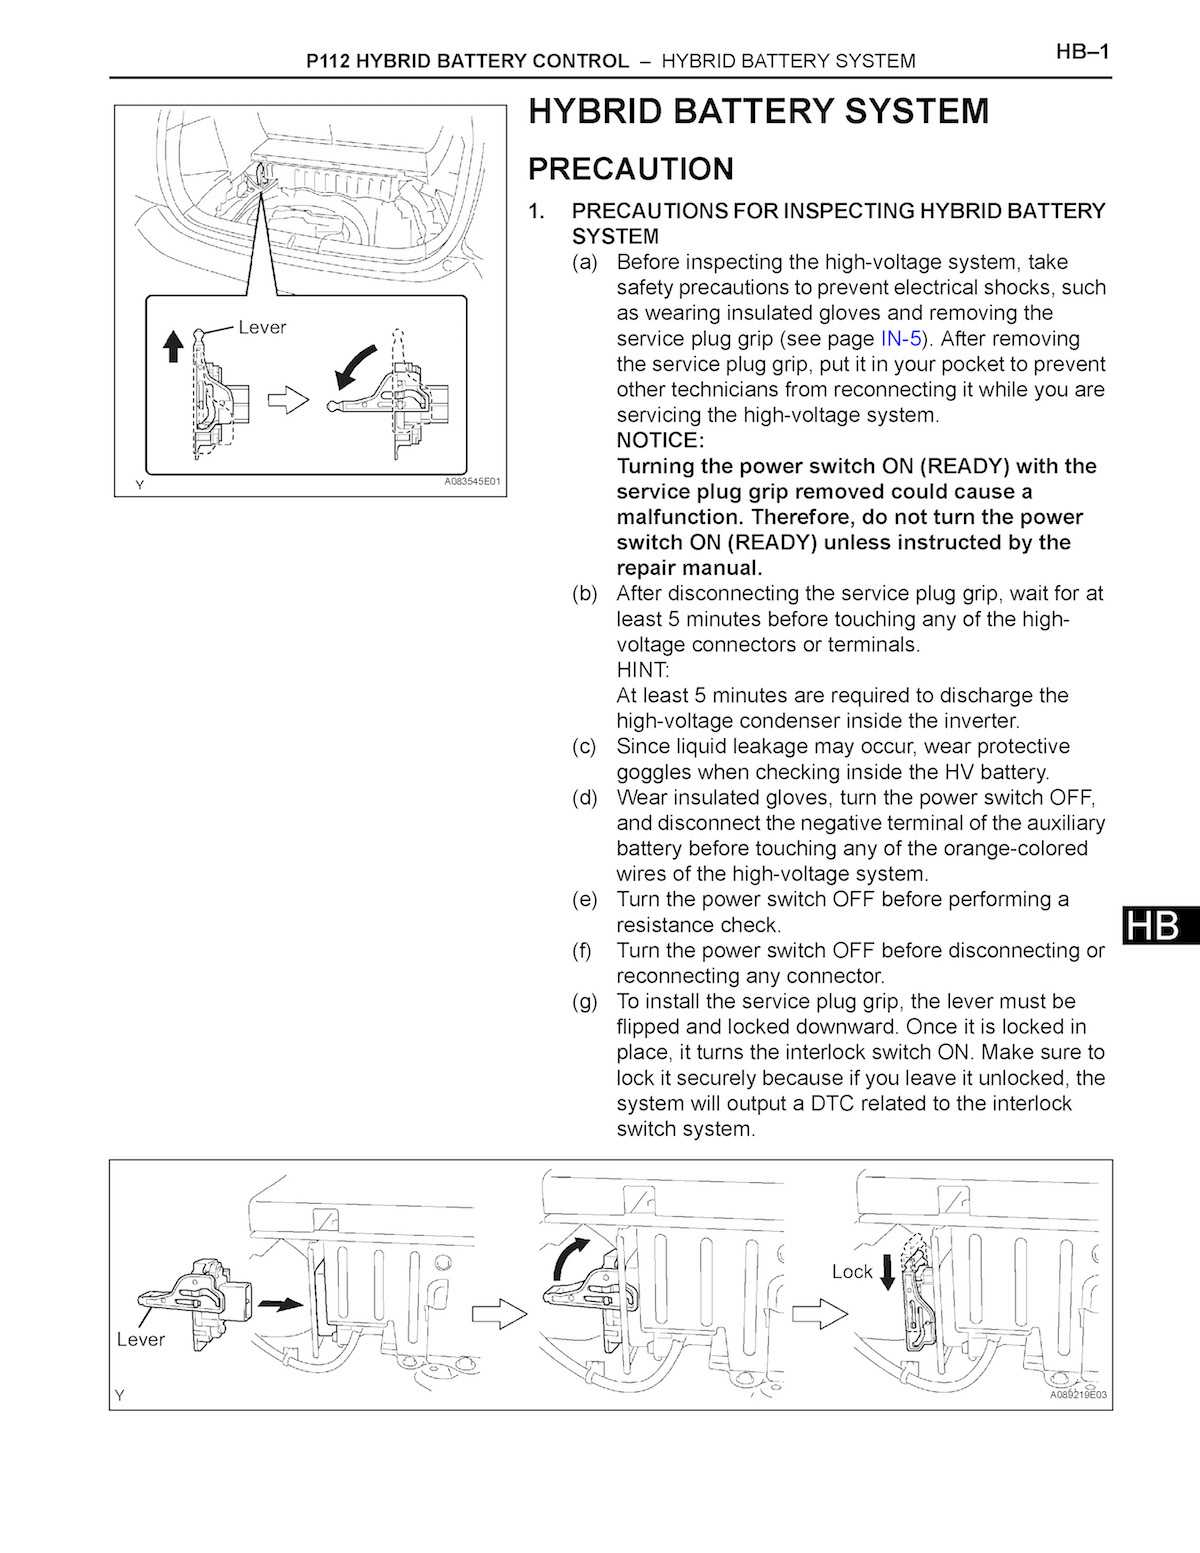 2006 Toyota Prius Repair Manual, P112 Hybrid Battery System